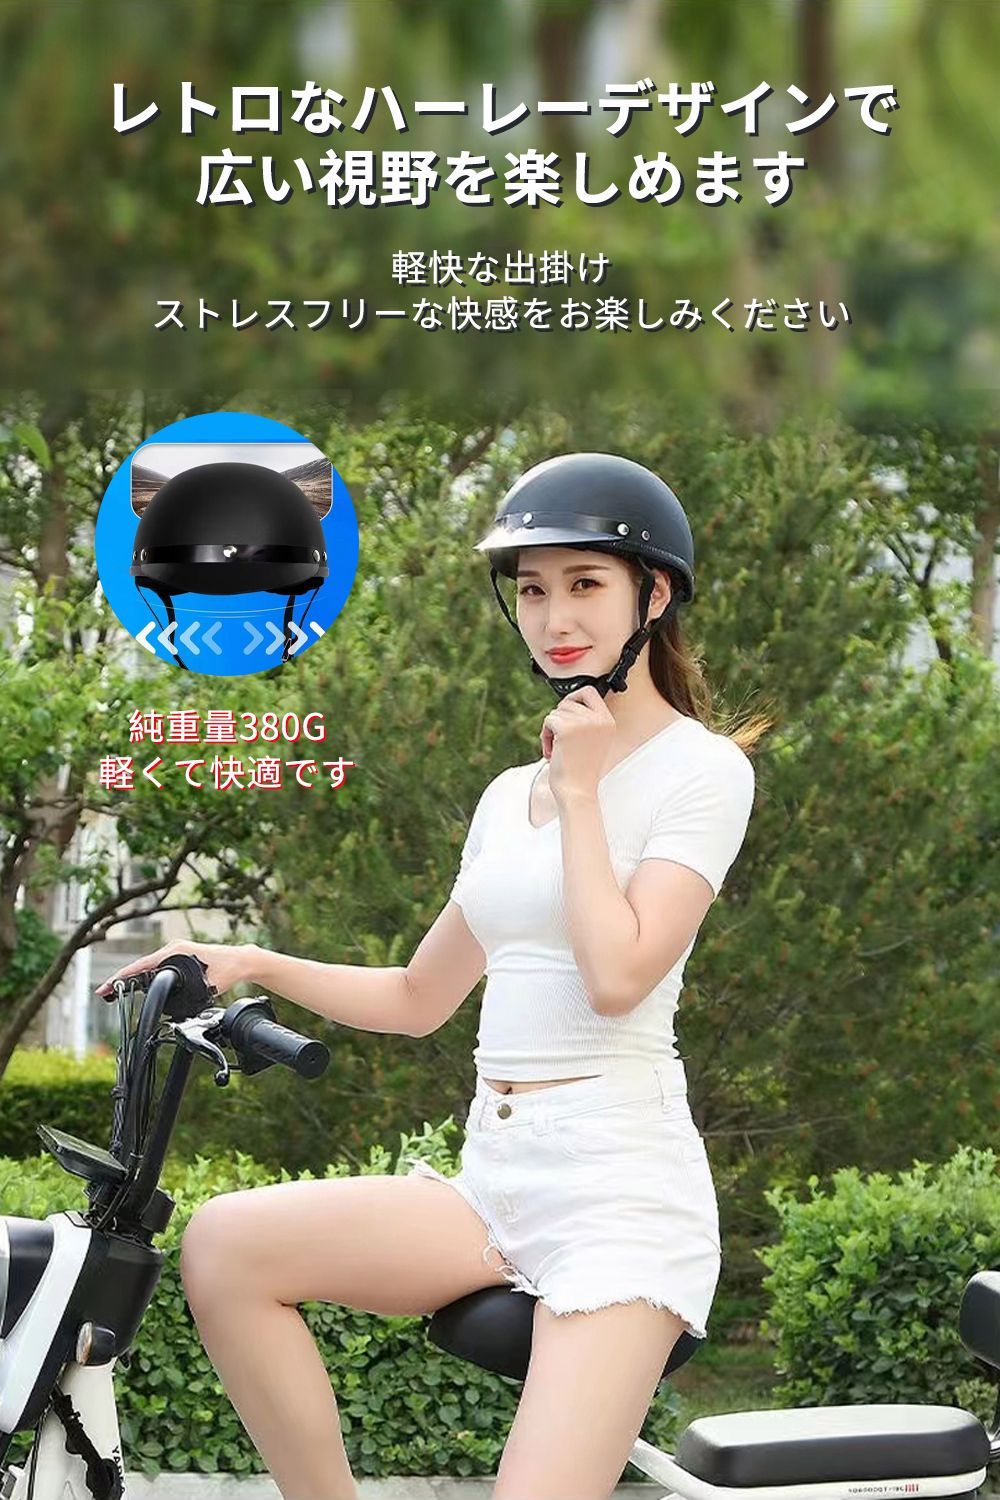 ヘルメット 大人用 レディース 帽子型 自転車 おしゃれ かわいい